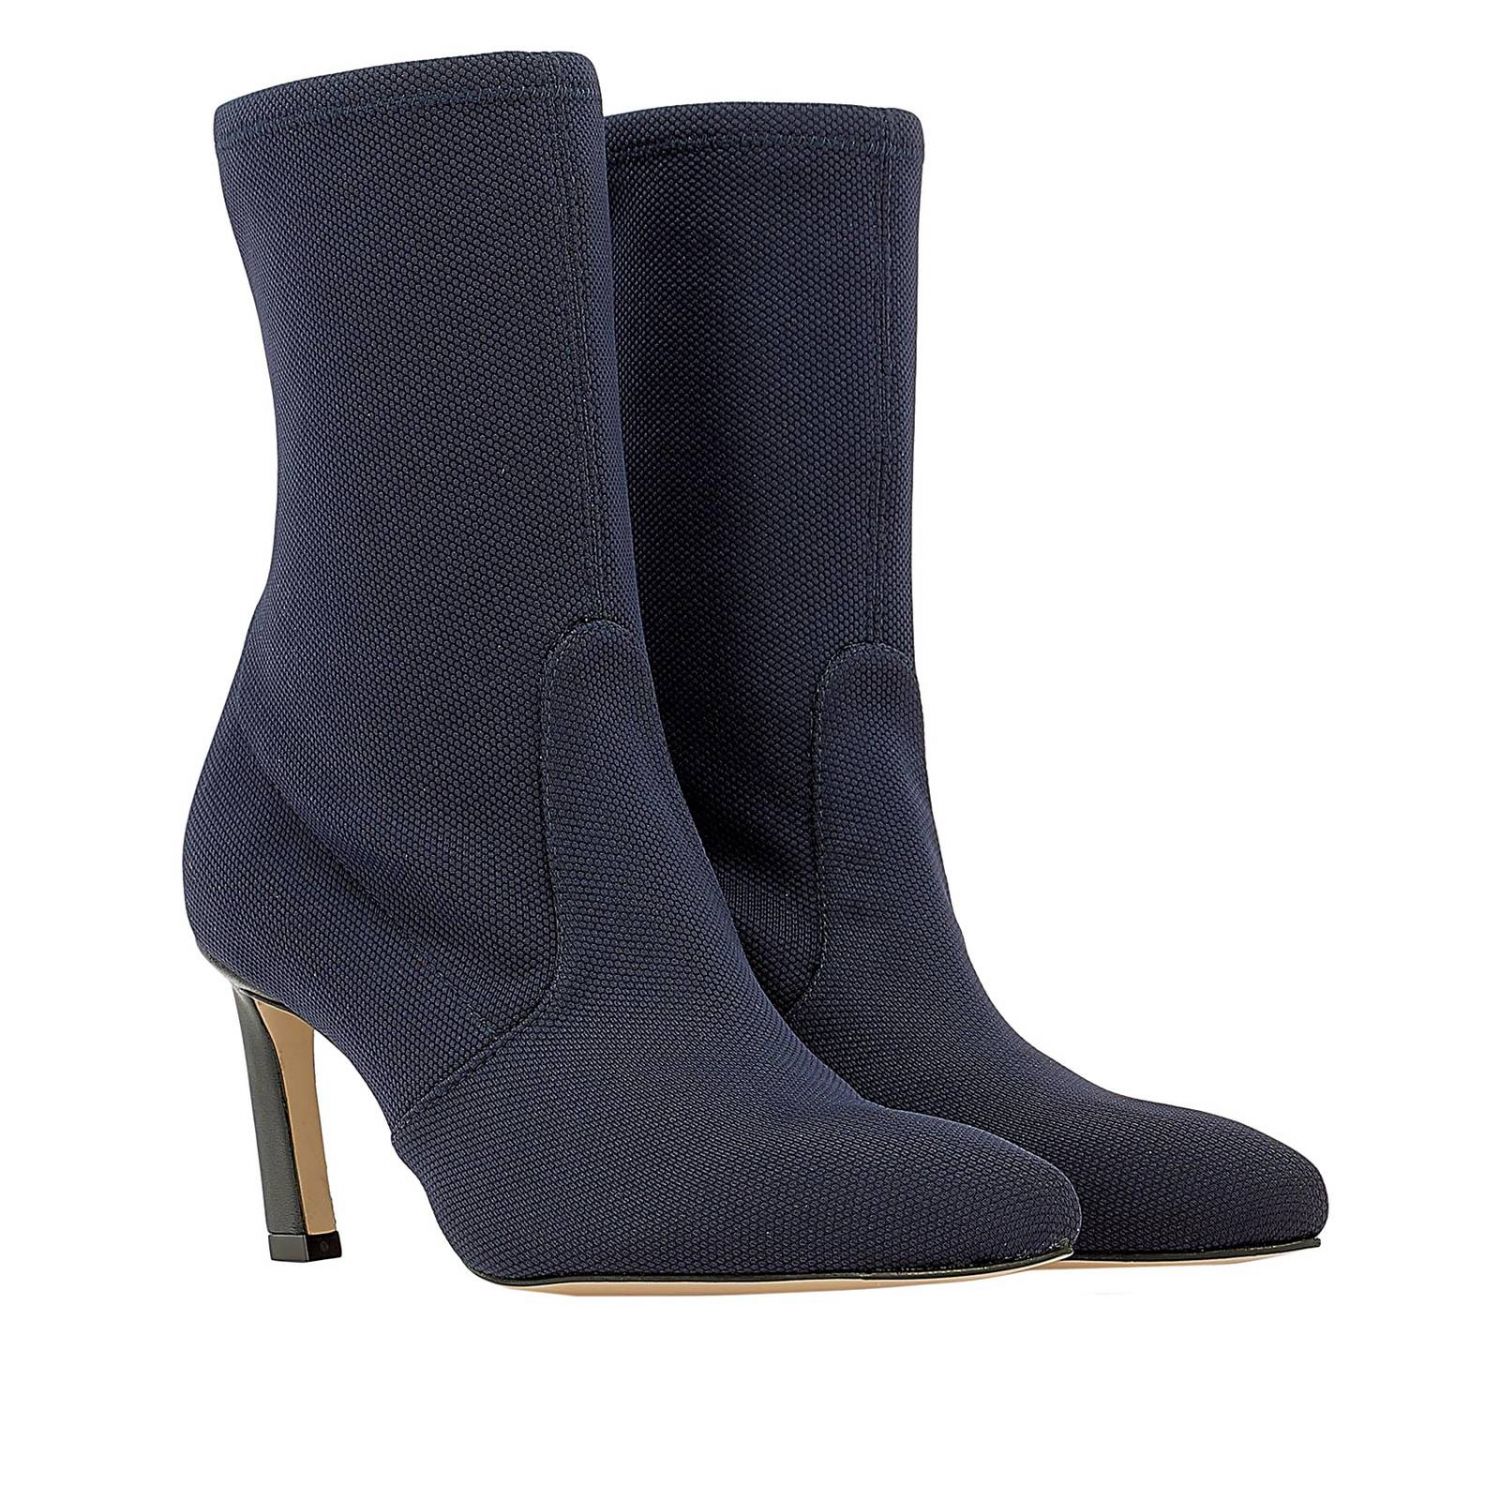 Stuart Weitzman Outlet: high heel shoes for woman - Blue | Stuart ...